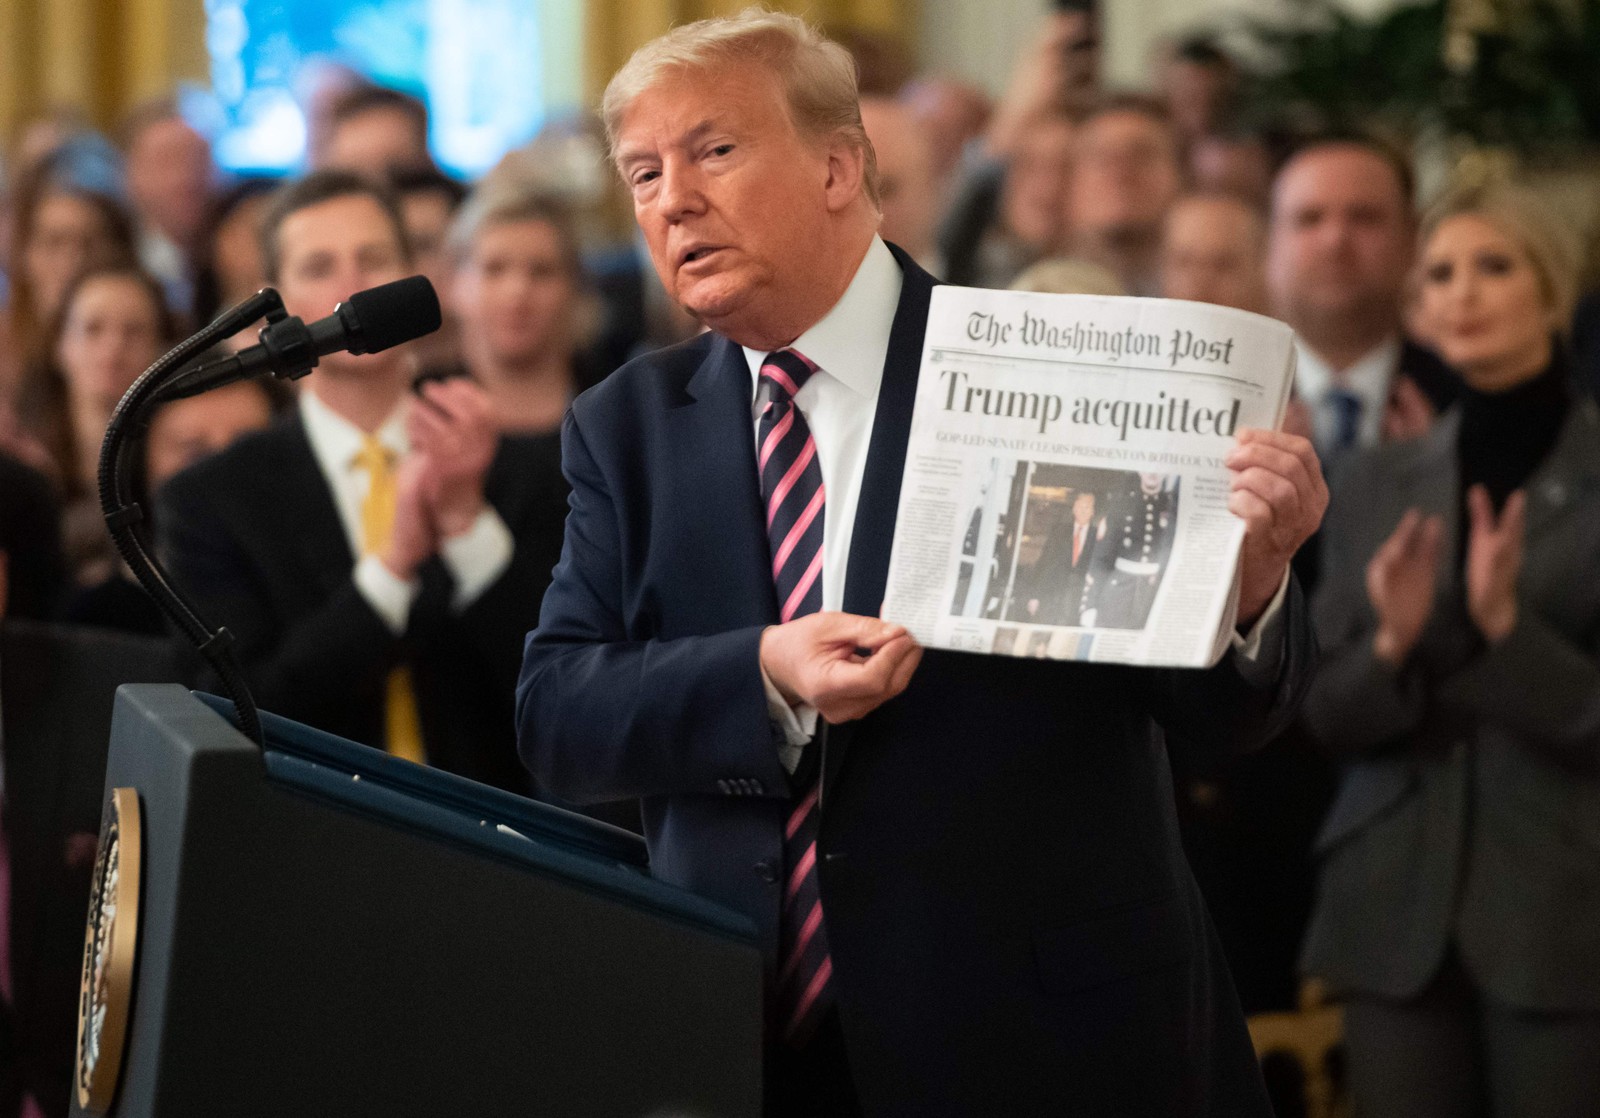 Trump mostra a primeira página do Washington Post, com o resultado de sua absolvição no processo de impeachment no SenadoAFP - 06/02/2020